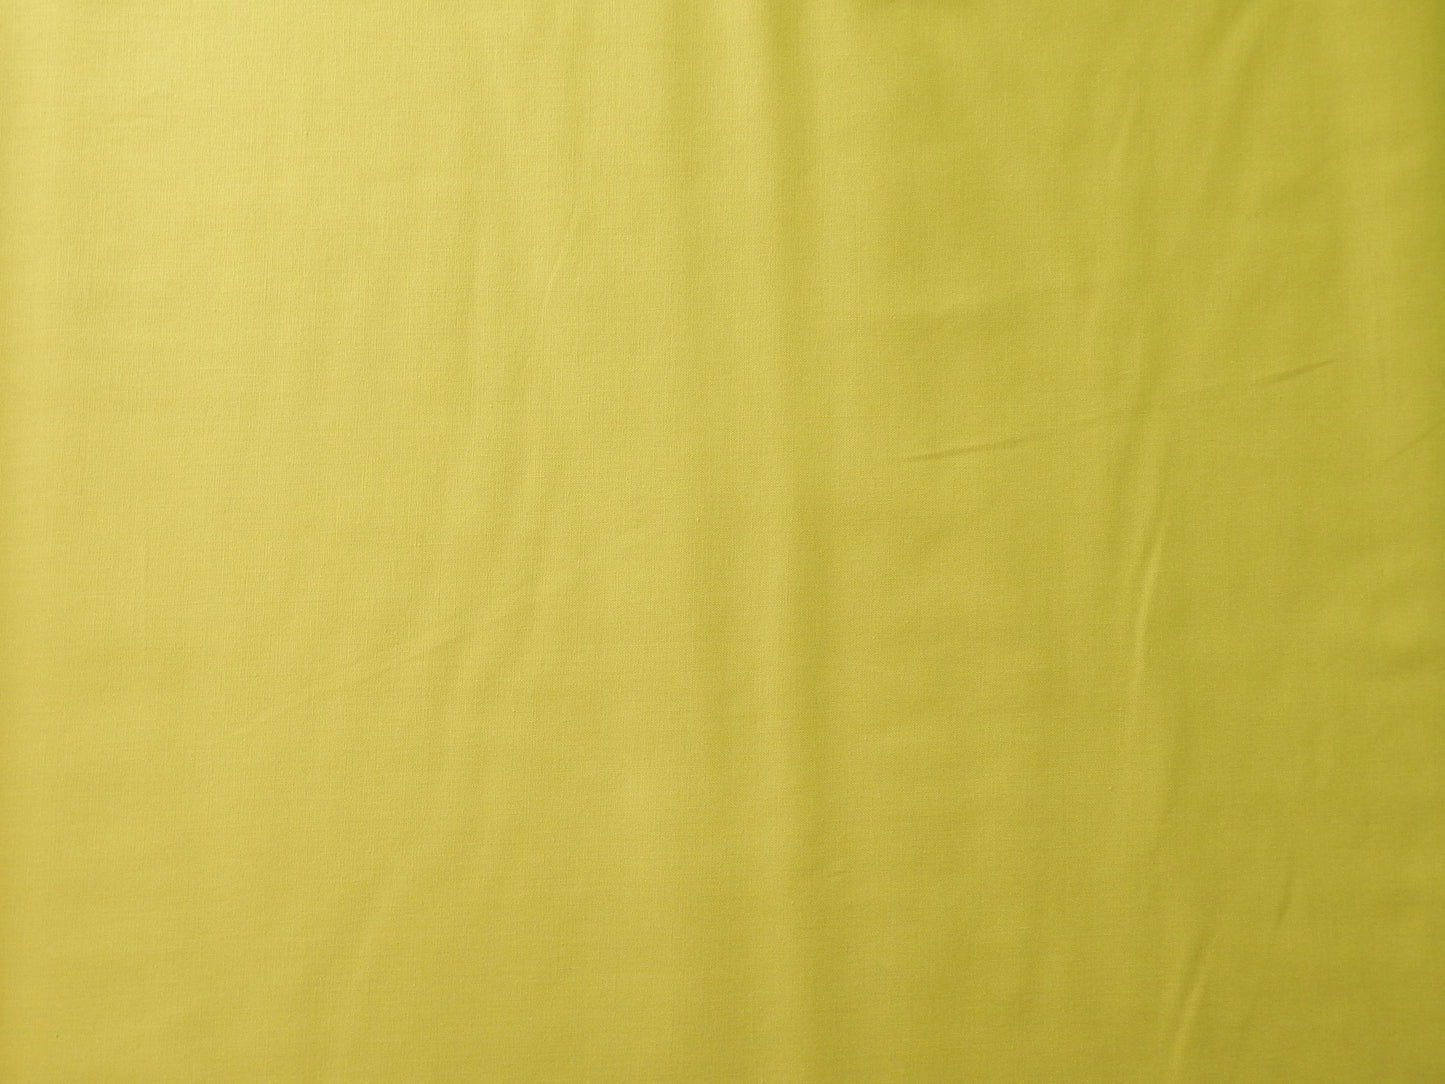 paintbrush studios kiwi green quilting fabric